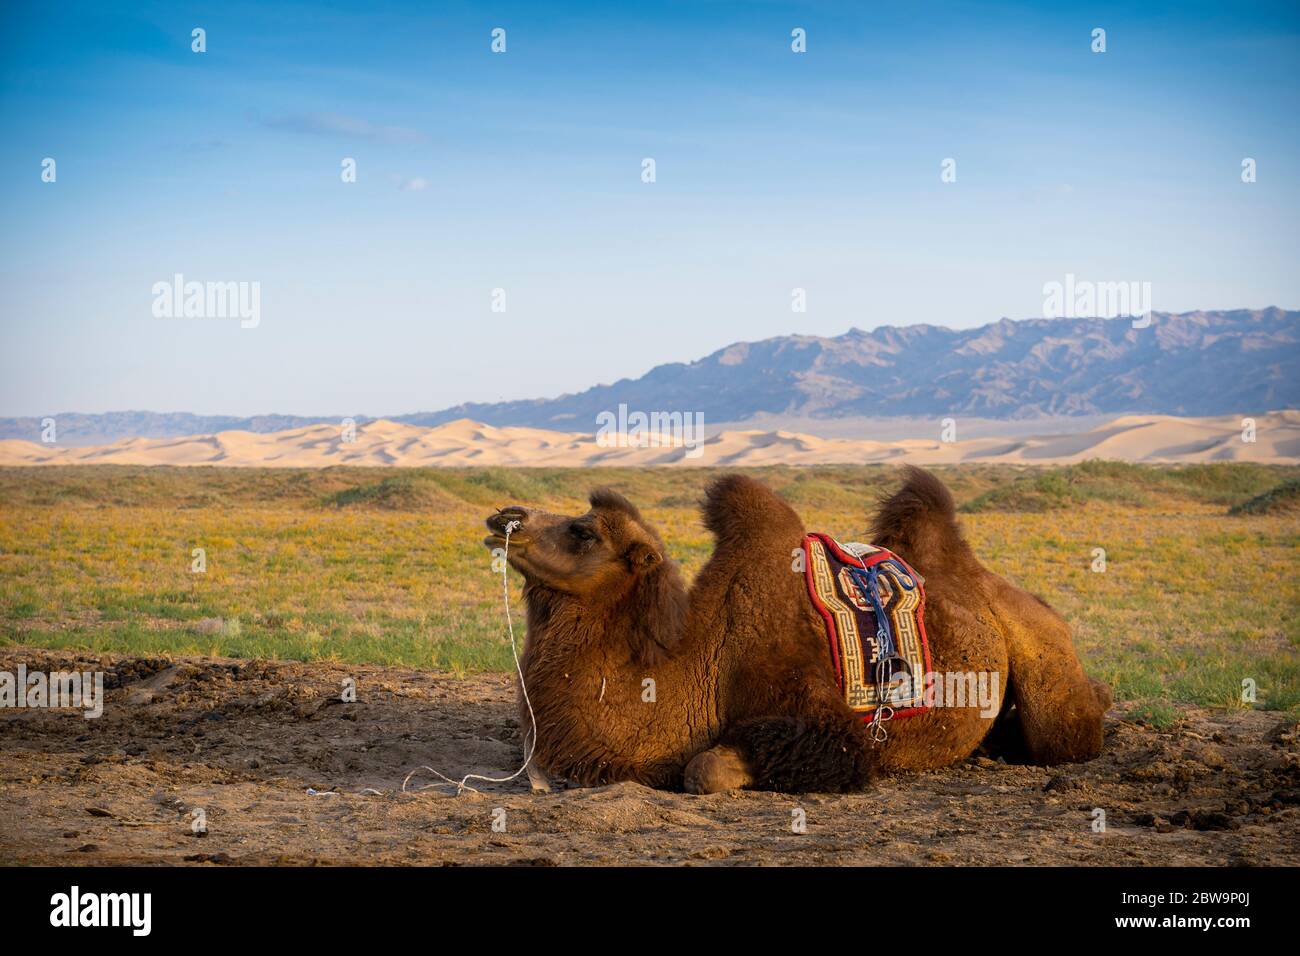 Chameau de Bactrian près de chanter dunes de sable atcKhongoryn Els dans le désert de Gobi, Mongolie, mongol, Asie, asiatique. Banque D'Images